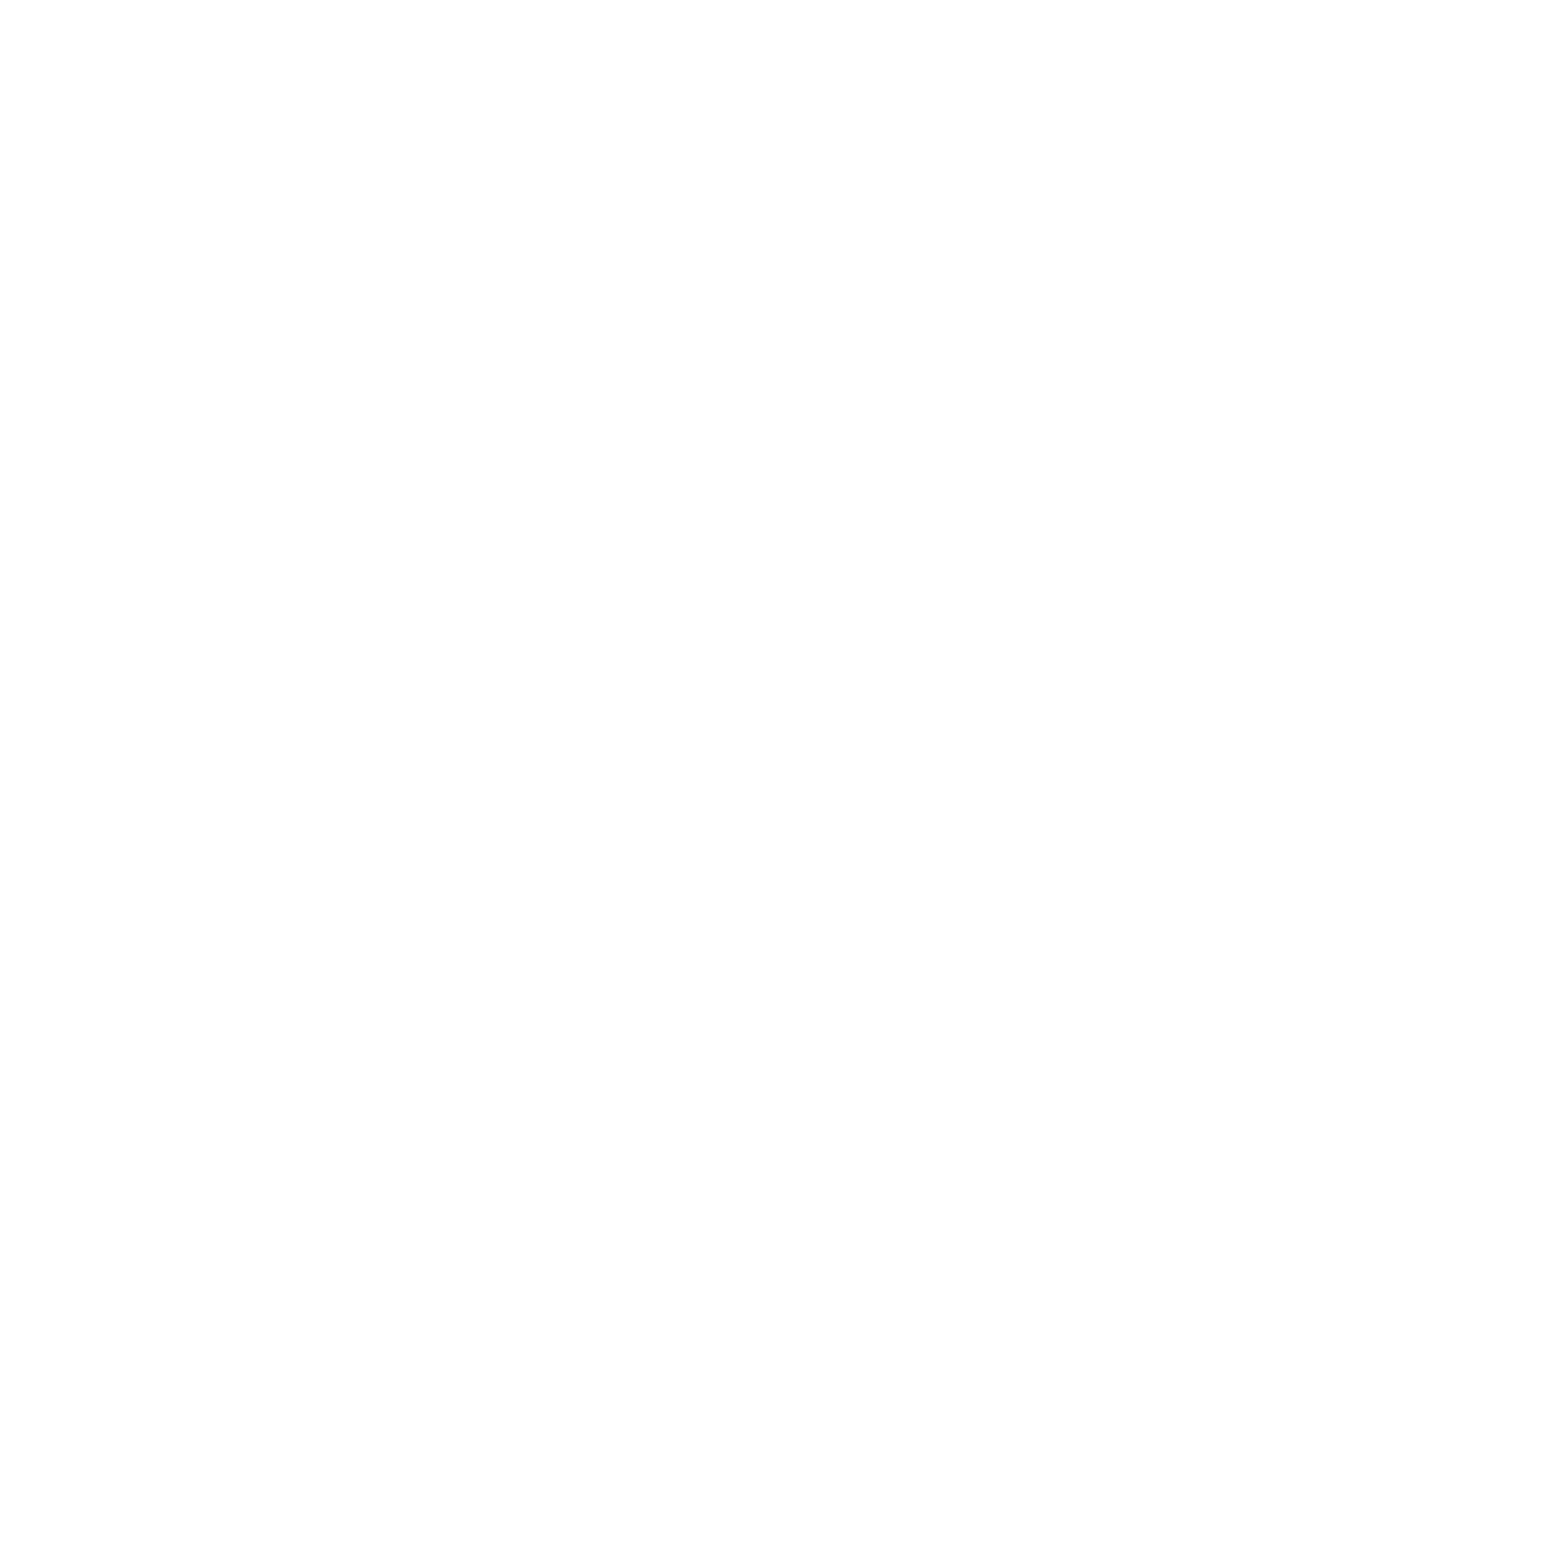 Metso logo pour fonds sombres (PNG transparent)